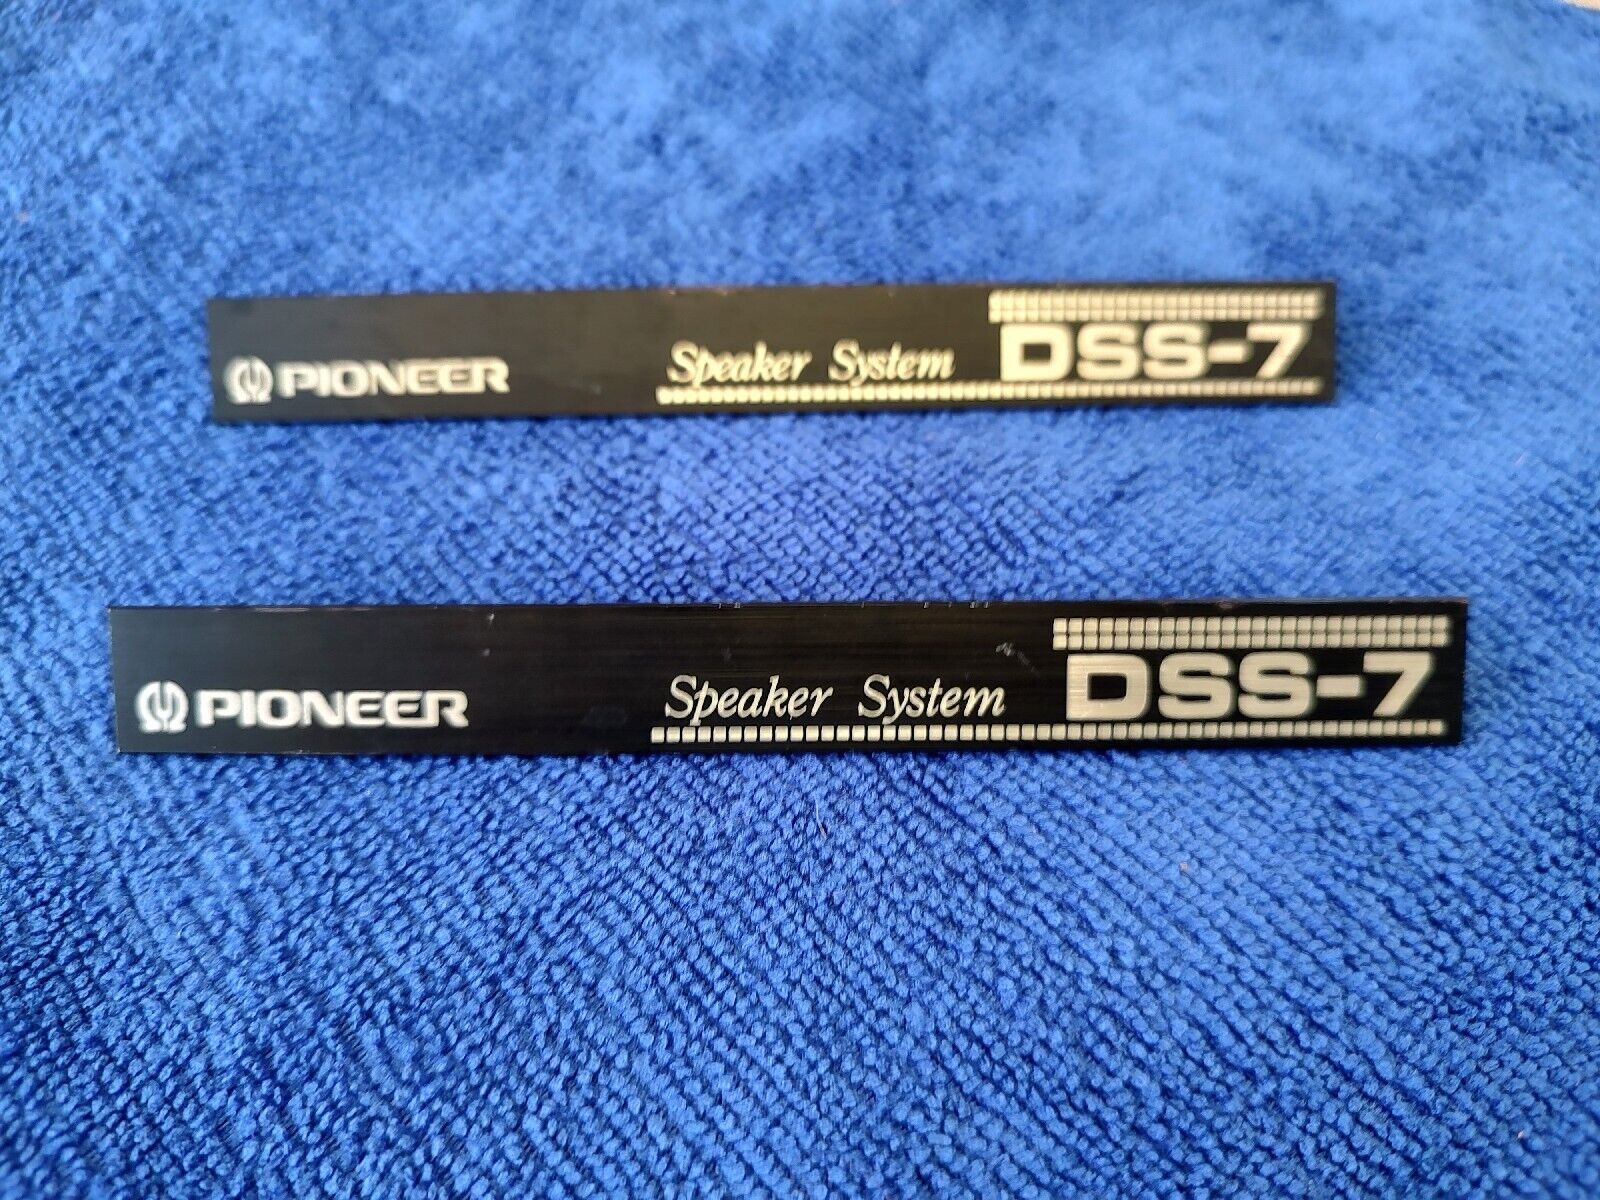 Pioneer DSS-7 speaker grill badges / logos / emblems / Pair